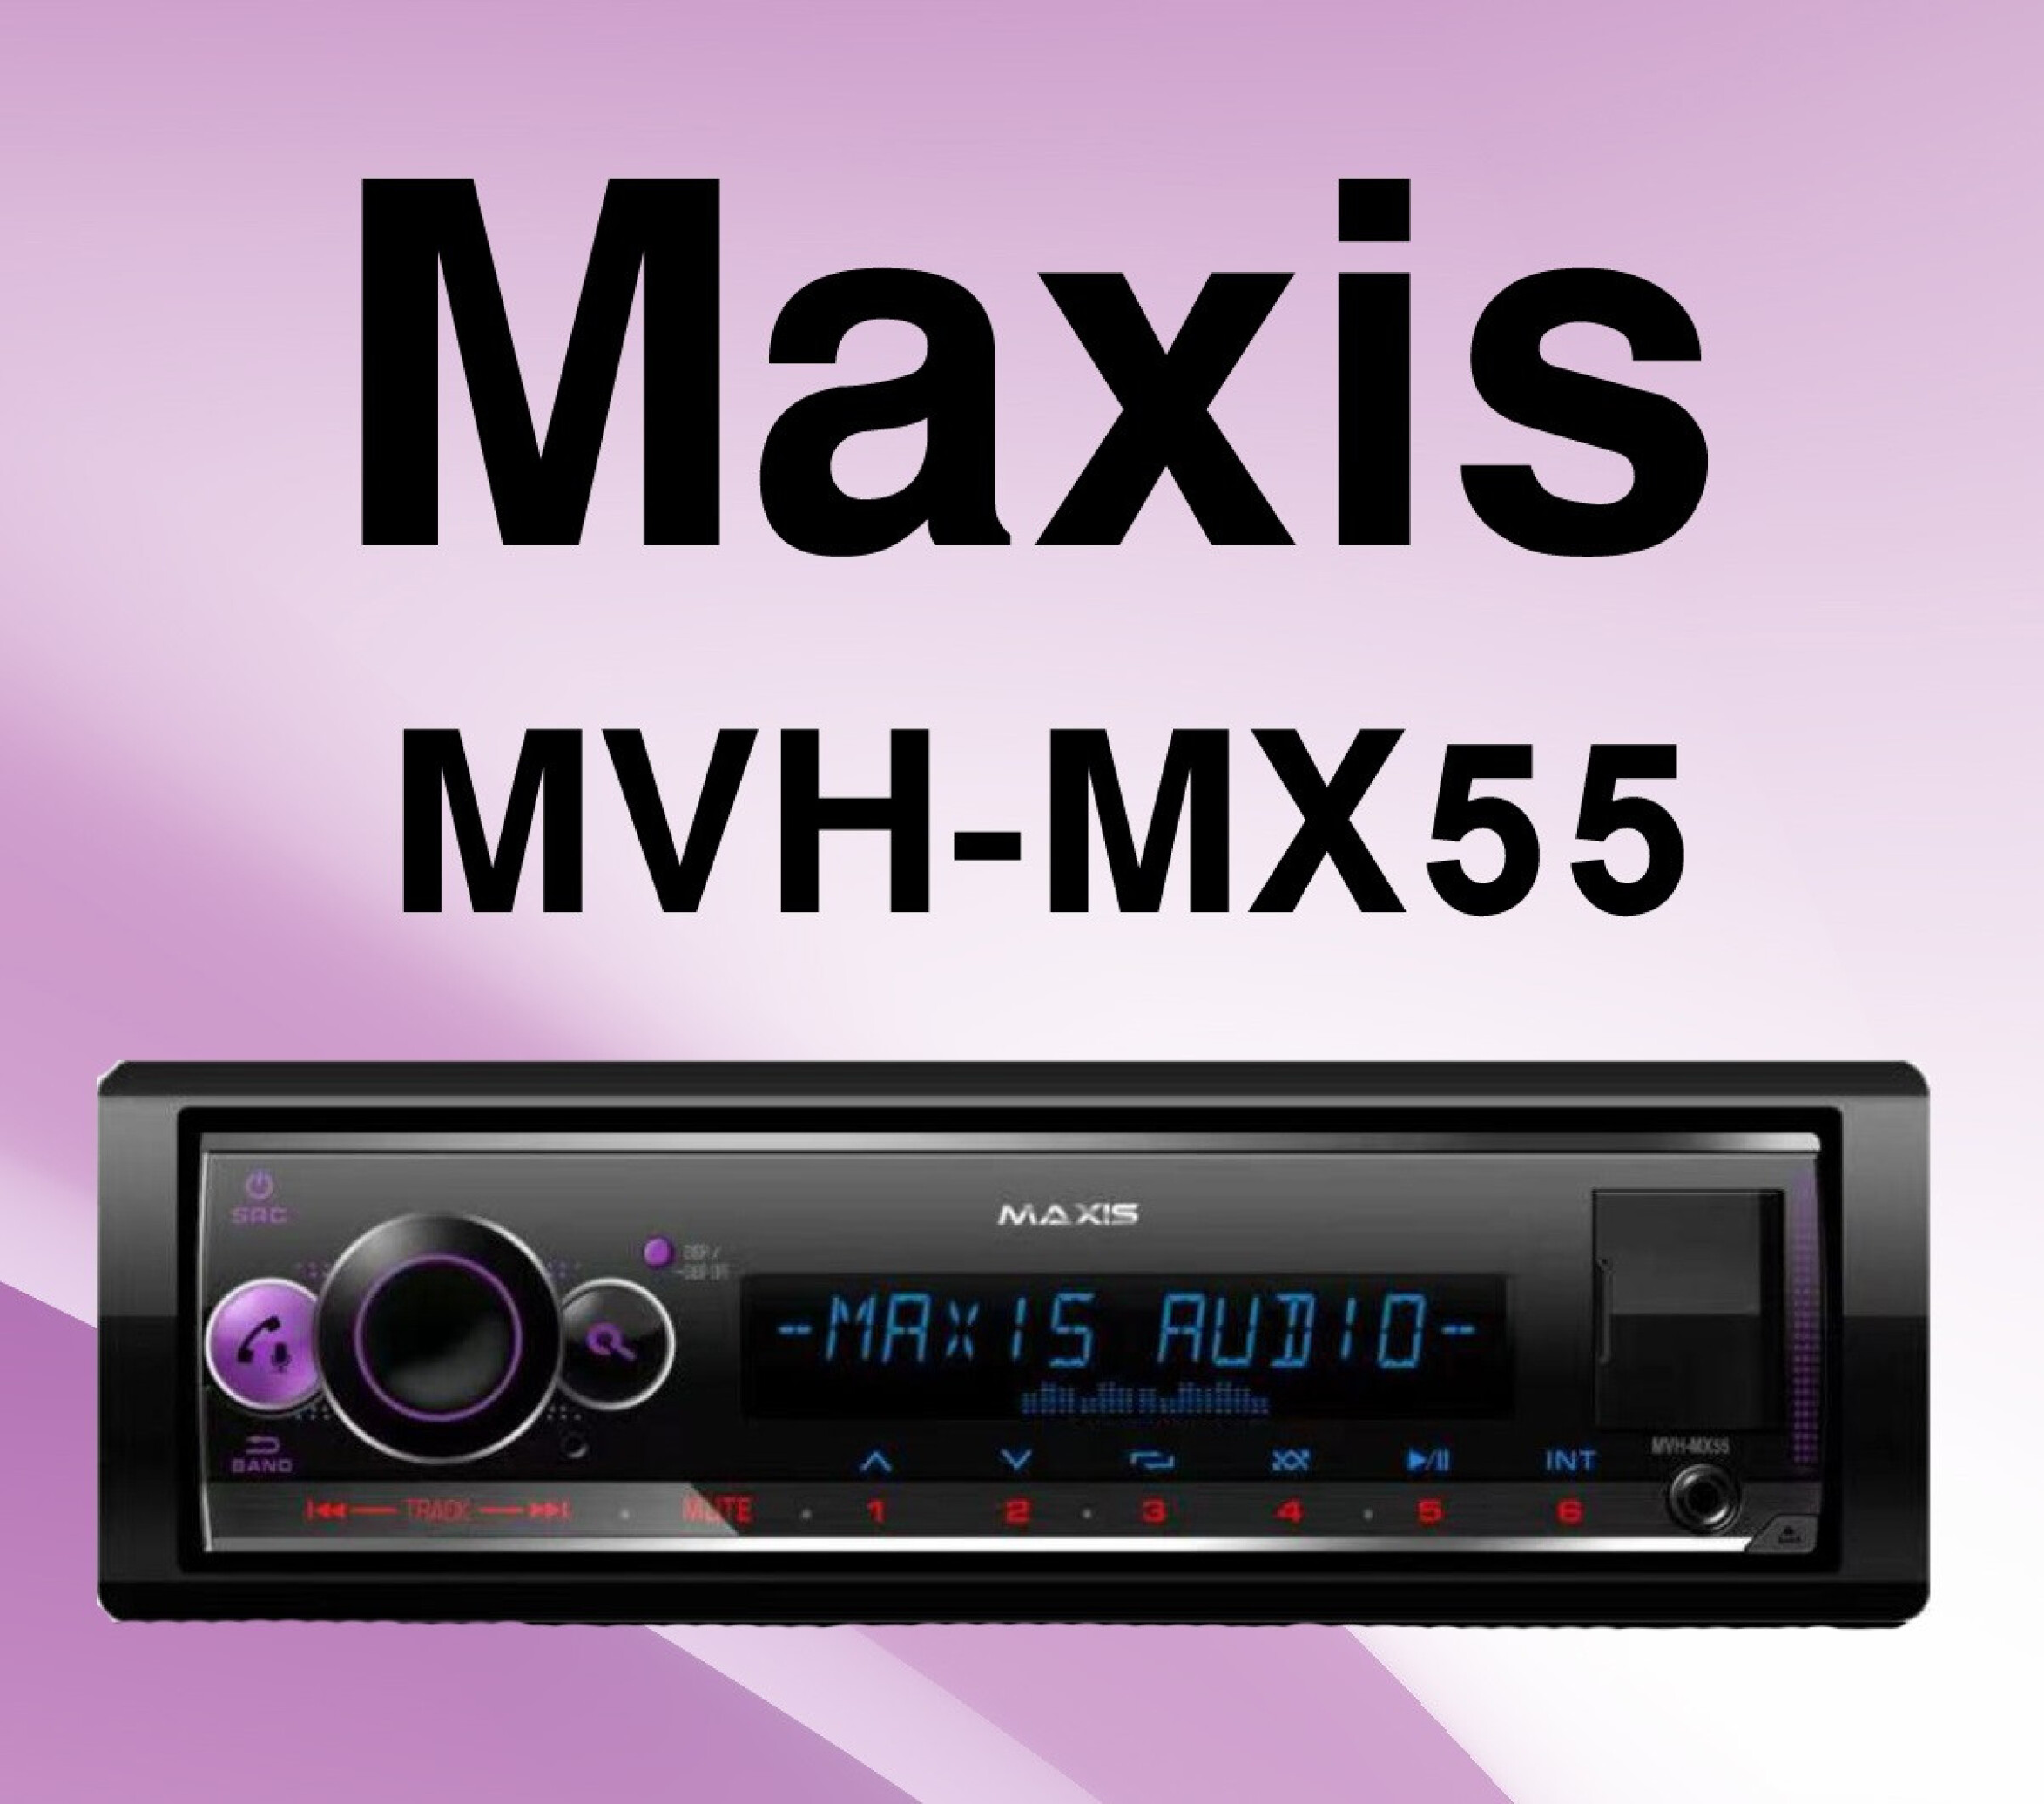  پخش صوتی مکسیس MAXIS MVH-MX55 